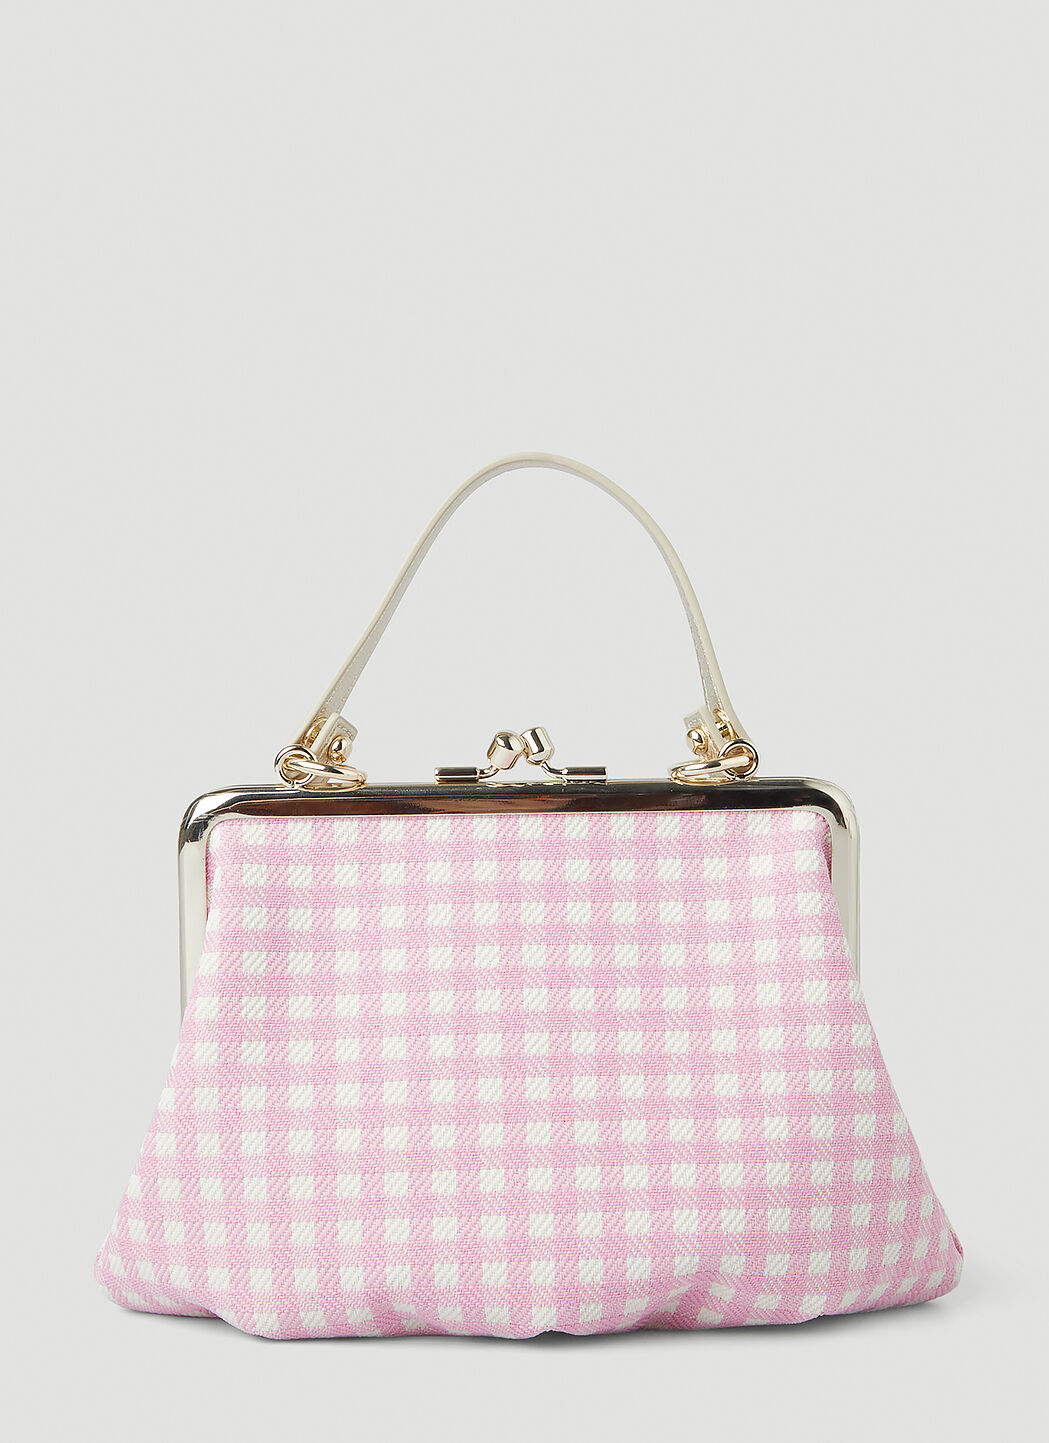 Vivienne Westwood Bags Sale | MyBag